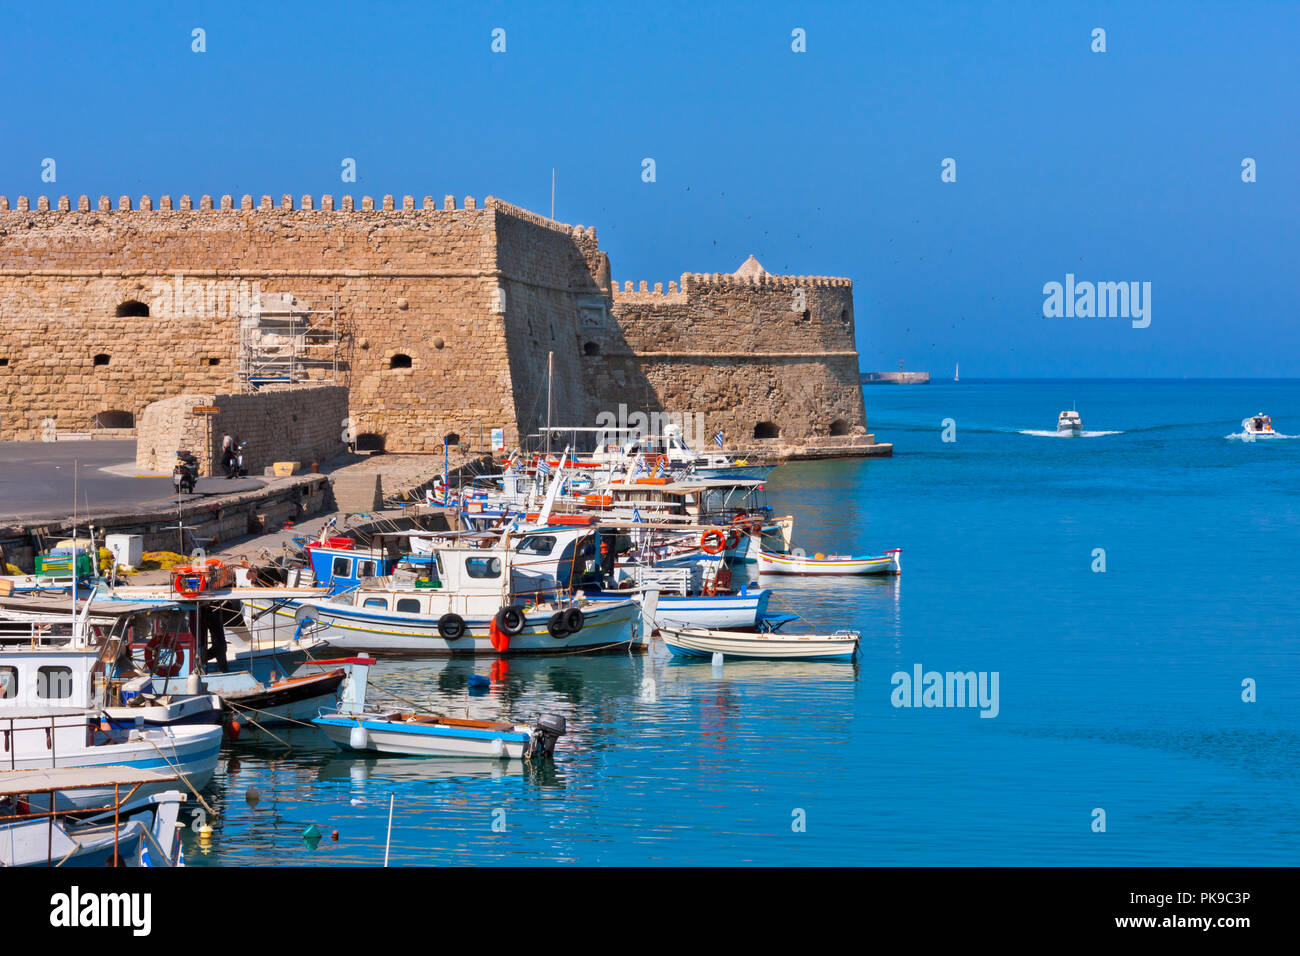 Castello a Mare (Koules Fortress) in the harbor of Heraklion, Crete Island, Greece Stock Photo